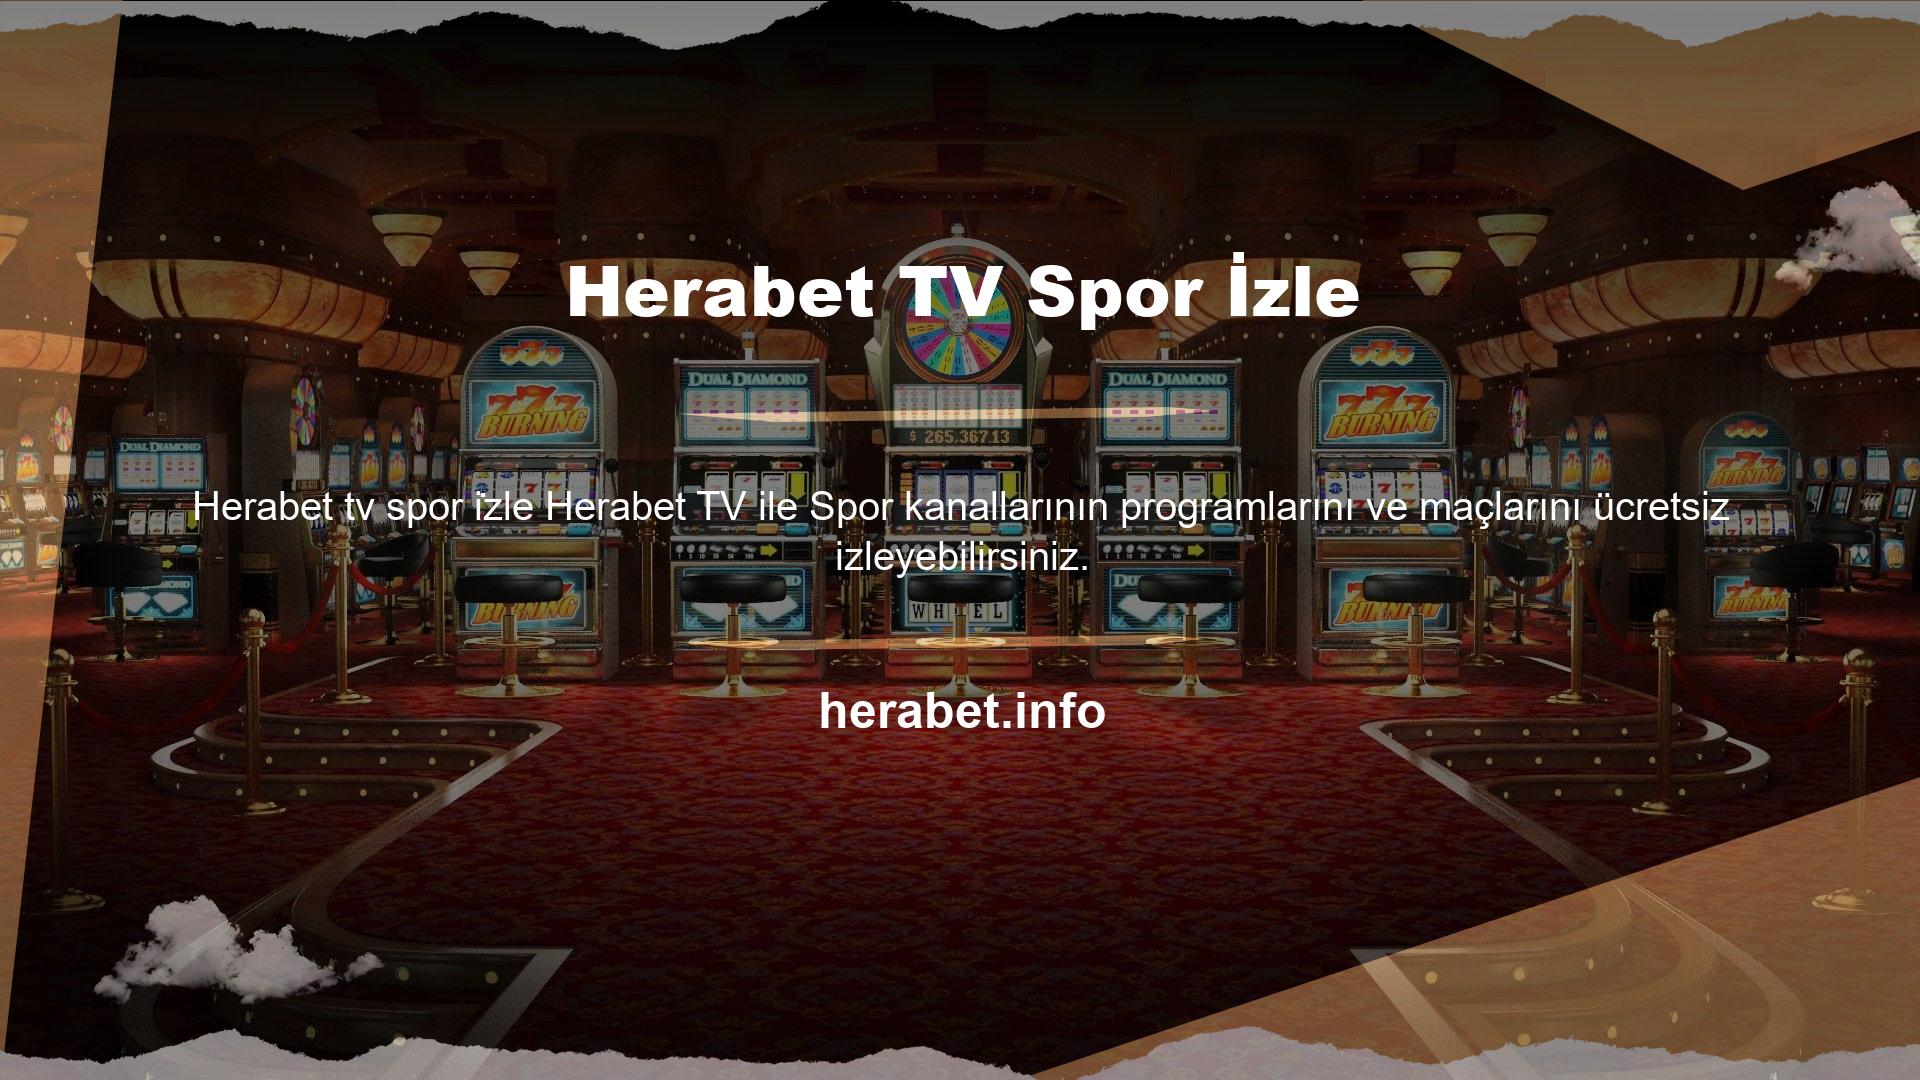 HD kalitesinde maç yayınları, herhangi bir gecikme veya kesinti olmaksızın Herabet TV'de sizlerle buluşacak